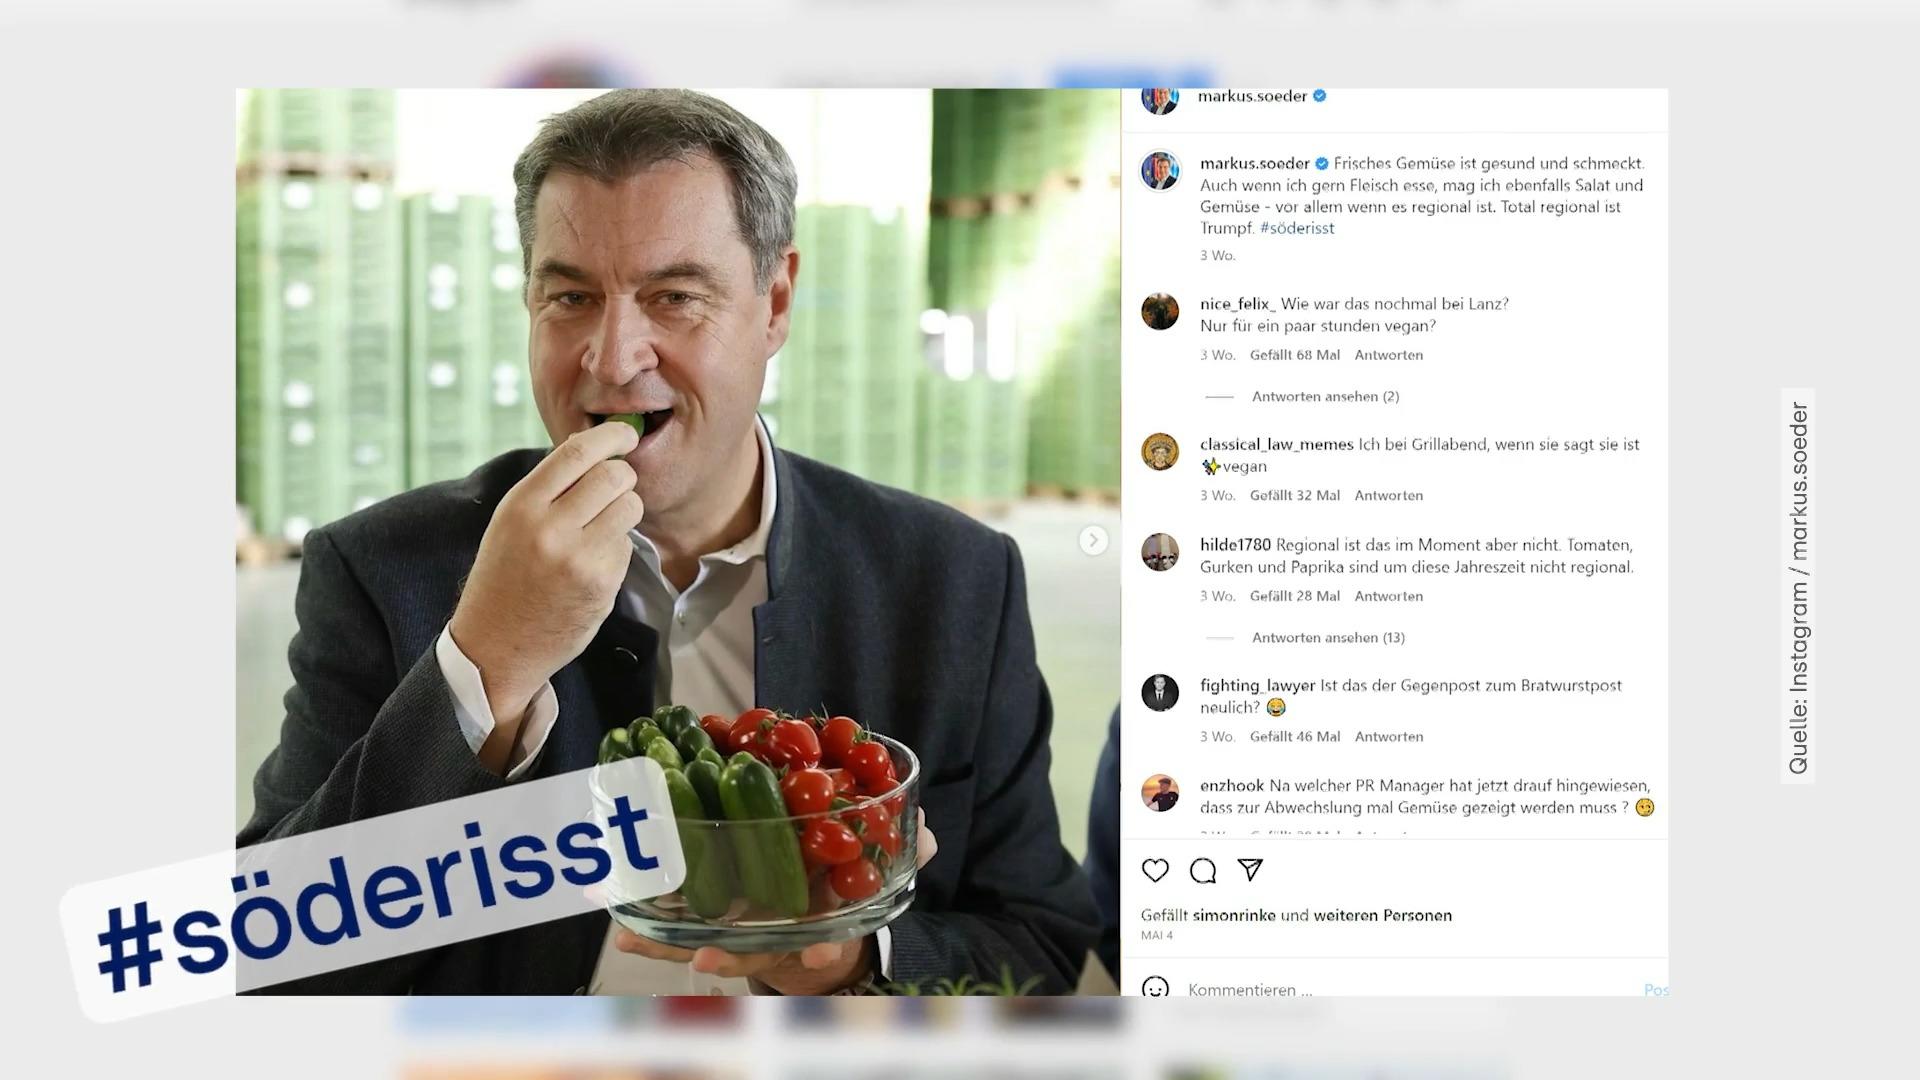 #Soodrest: ¿Por qué Marcus Söder siempre publica comida?  El reportero de RTL se encuentra con Sudder, ¡mientras come!